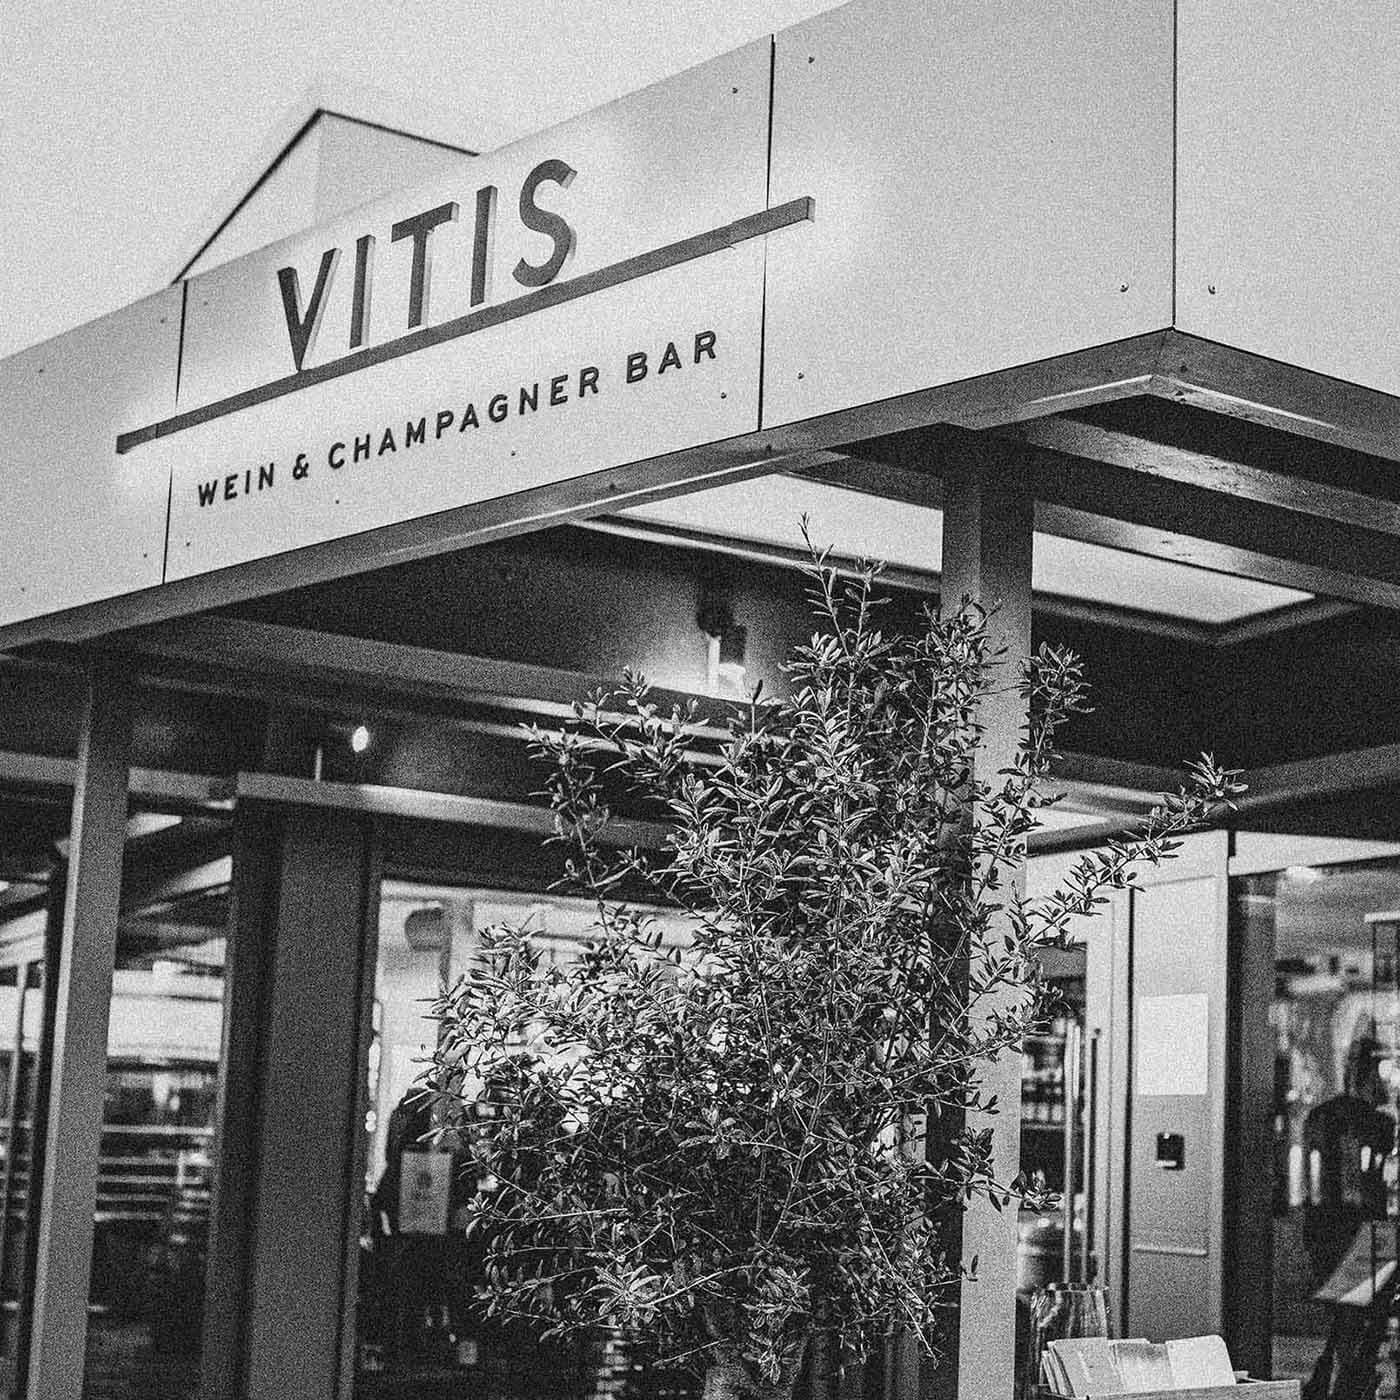 Eingang der Vitis Wein & Champagnerbar auf Sylt